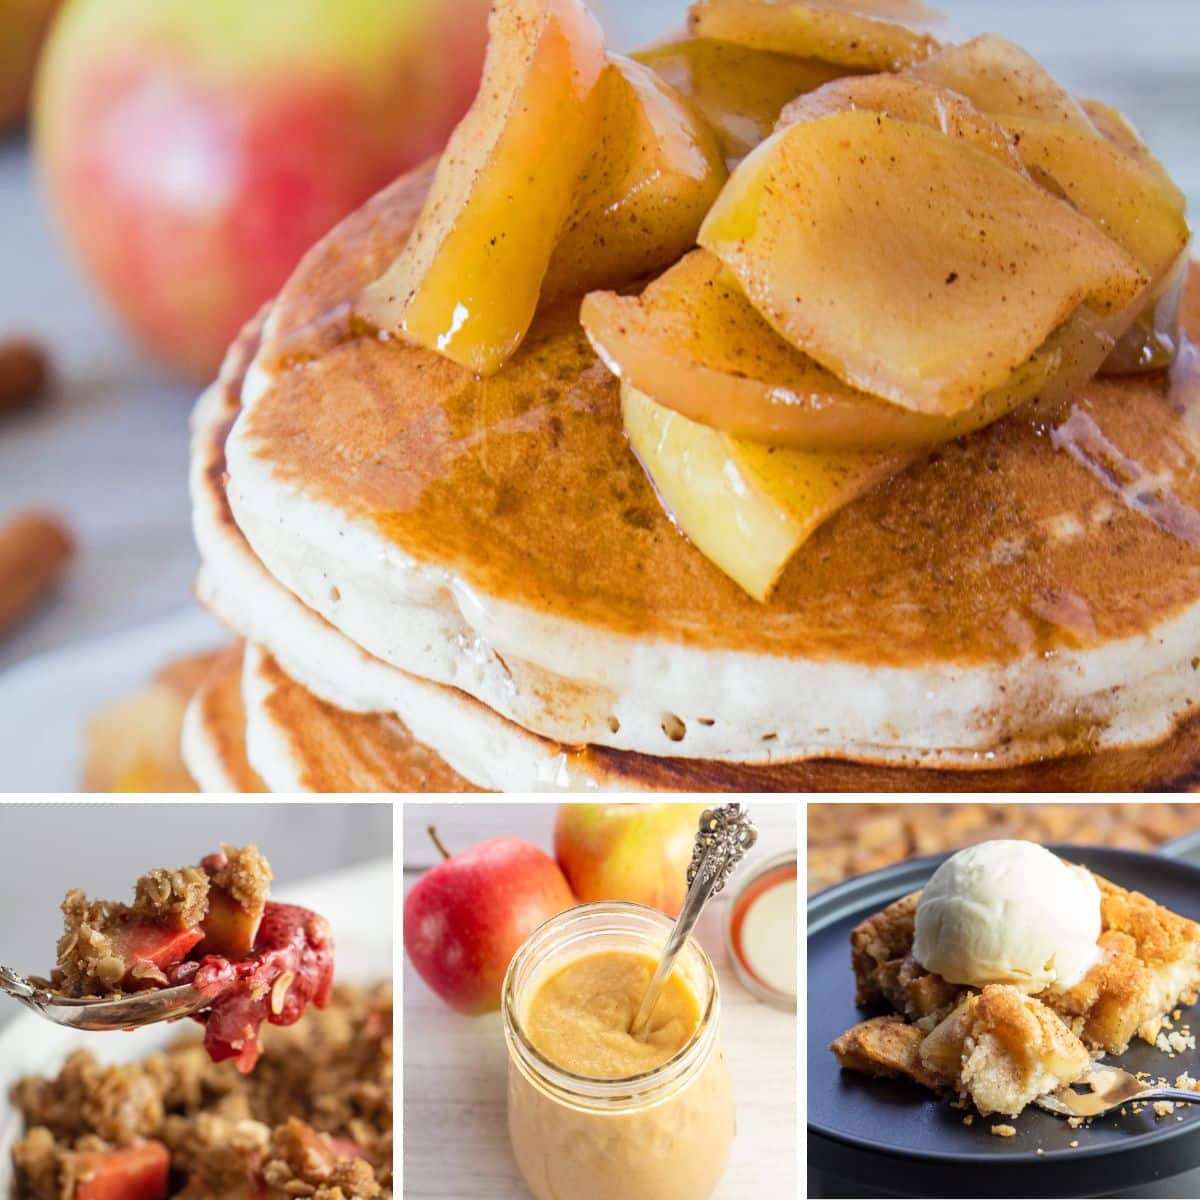 Лучшие рецепты яблок, которые можно приготовить и наслаждаться в любой день недели, с 4 рецептами в коллаже.